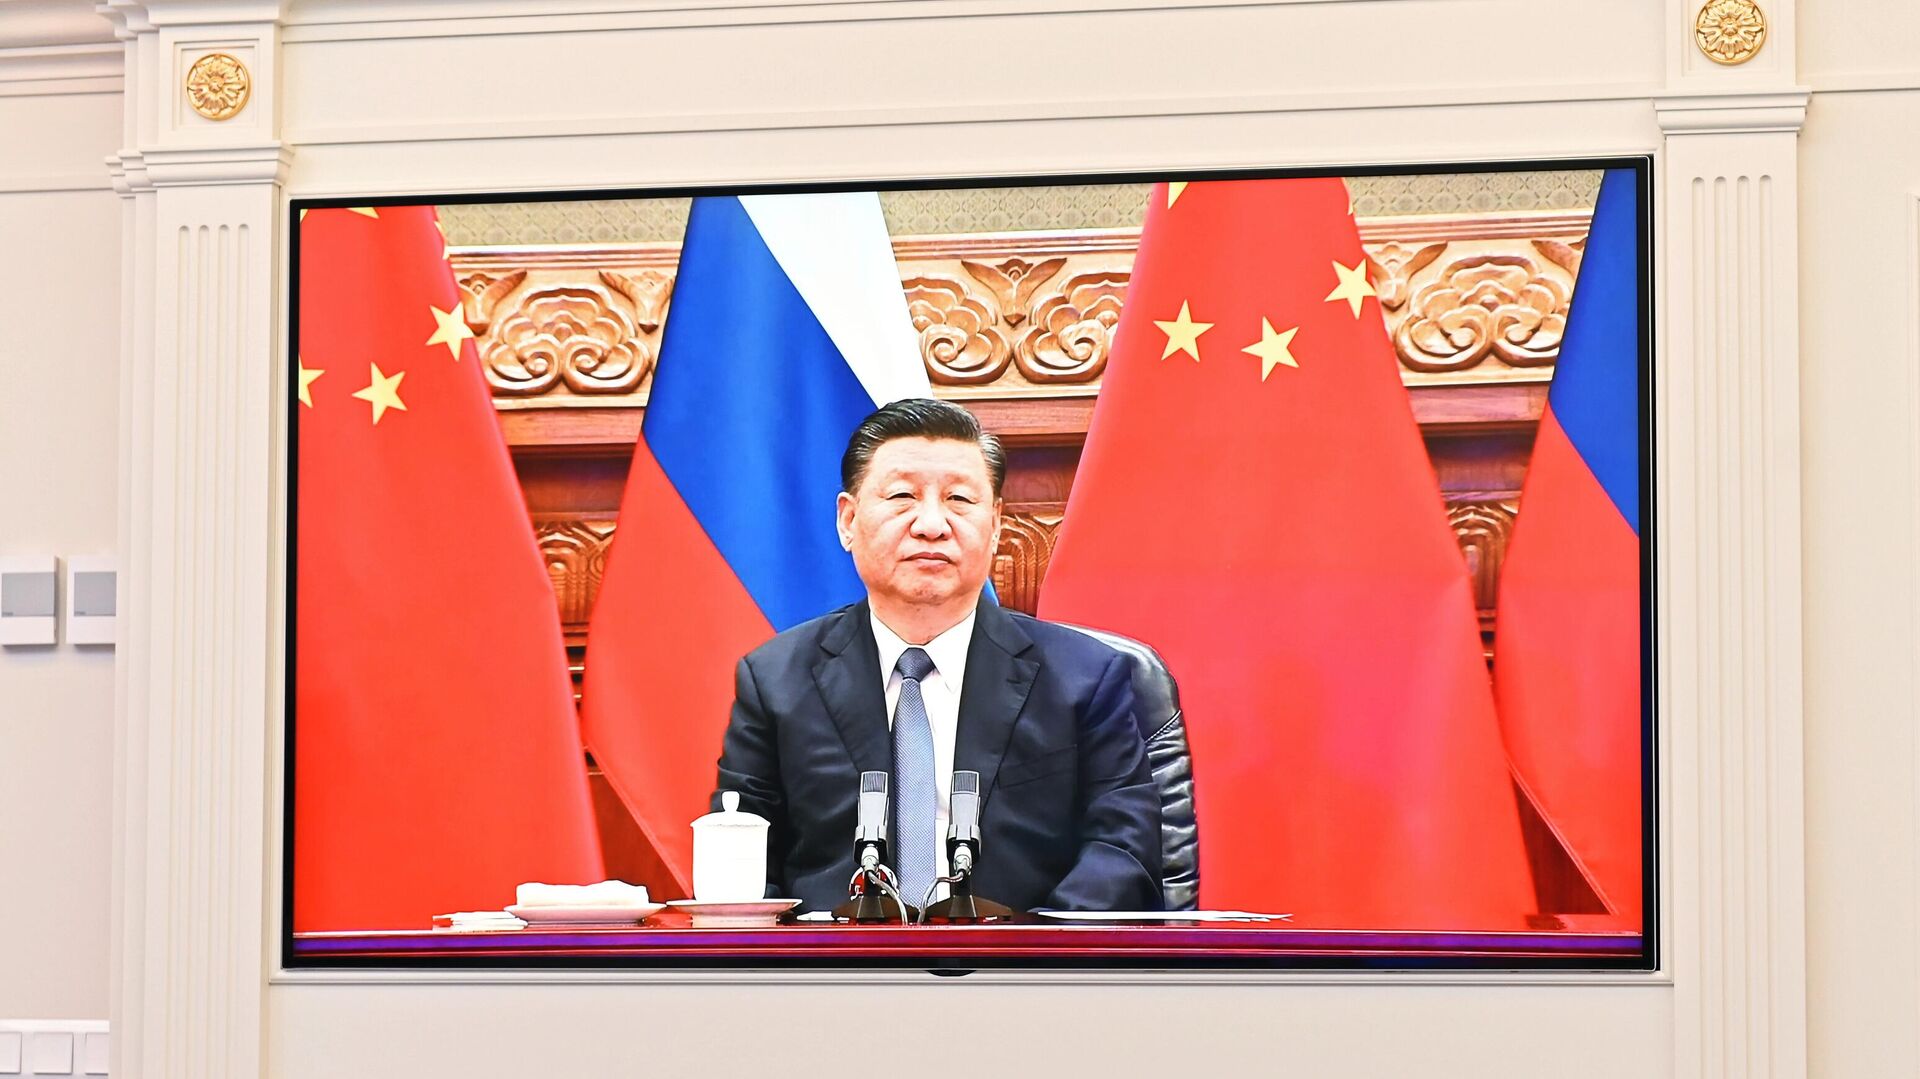 Кинески председник Си Ђинпинг током разговора са руским лидером Владимиром Путином - Sputnik Србија, 1920, 15.12.2021